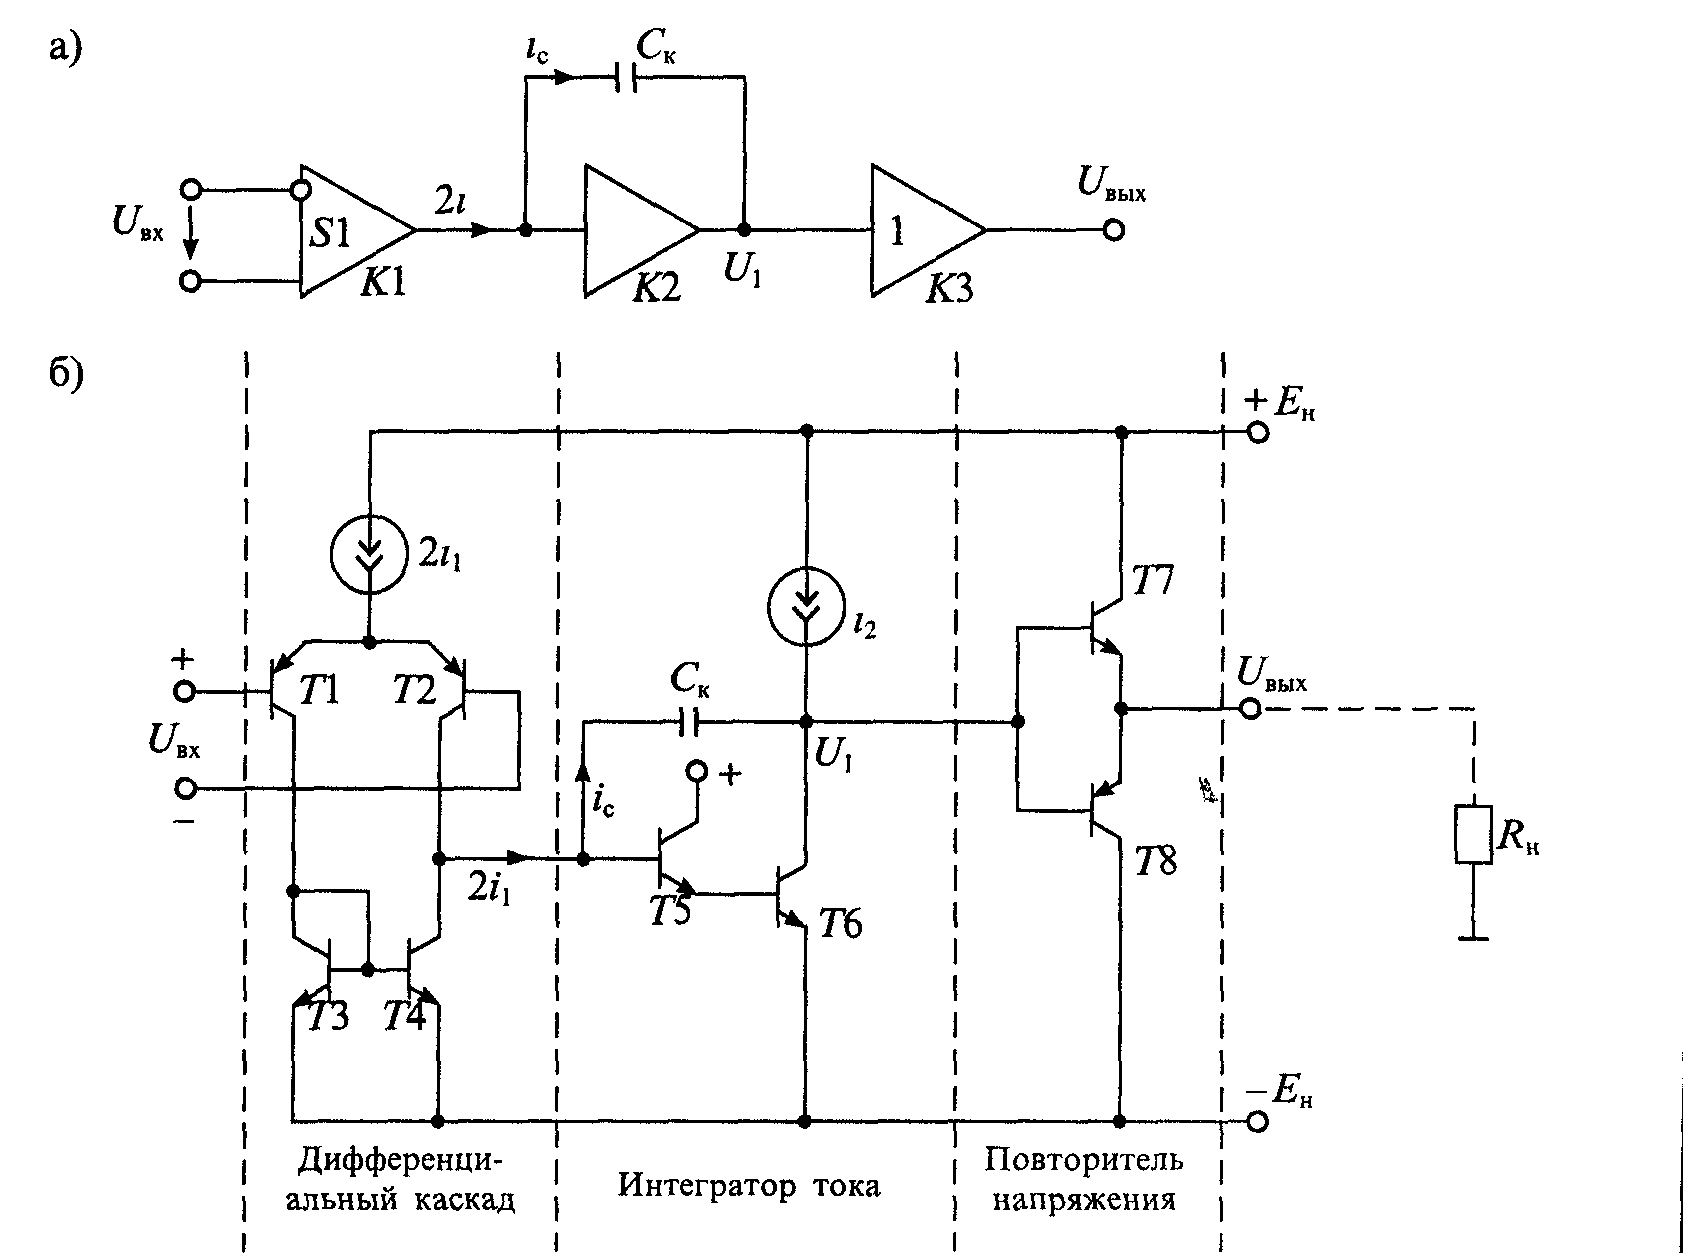 1 интегратор. Схема усилитель напряжения дифференциальный Каскад на операционном. Интегратор на операционном усилителе. Схема операционного усилителя на транзисторах. Схема дифференциального каскада на операционном усилителе.